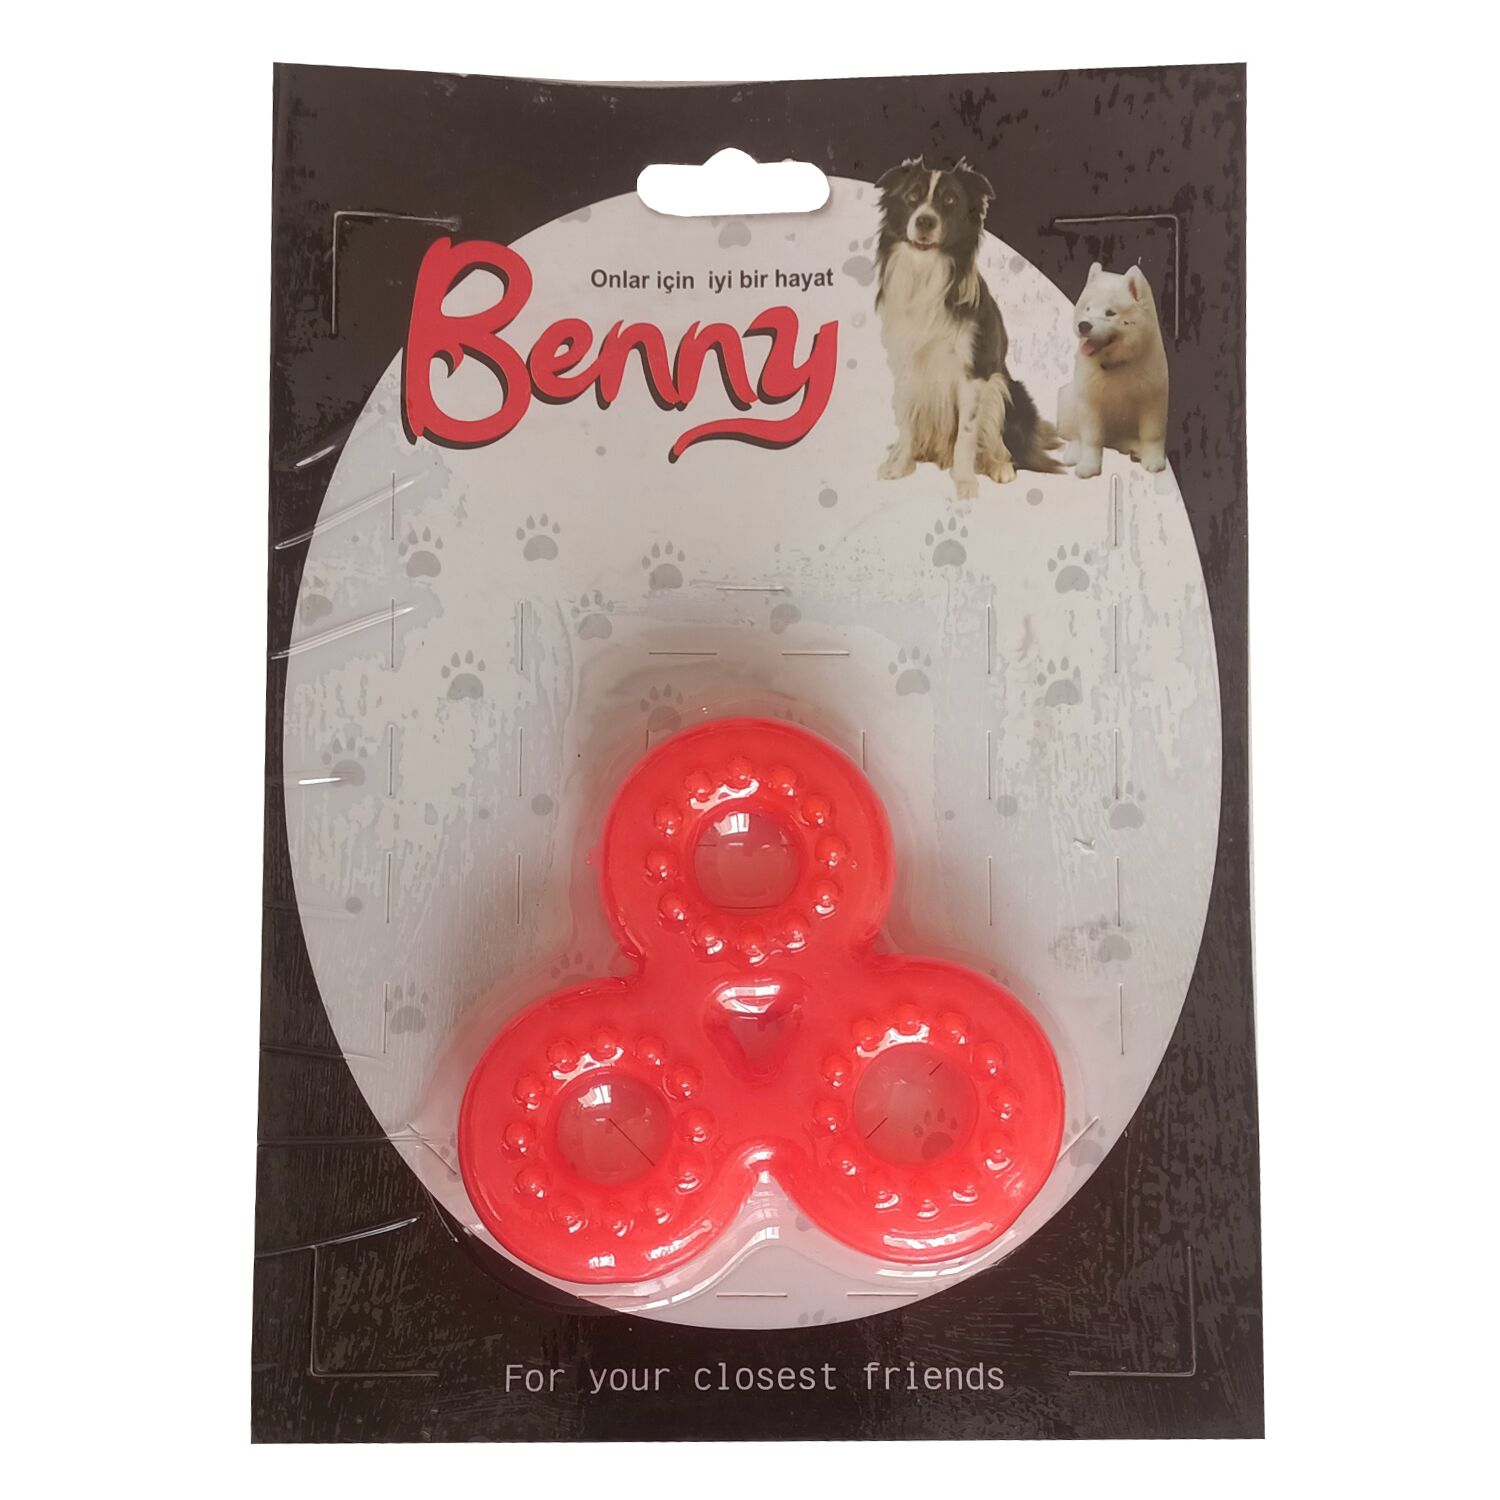 Benny Köpek Oyuncağı Üçlü Halka 9 x 9 cm Çeşitli Renklerde